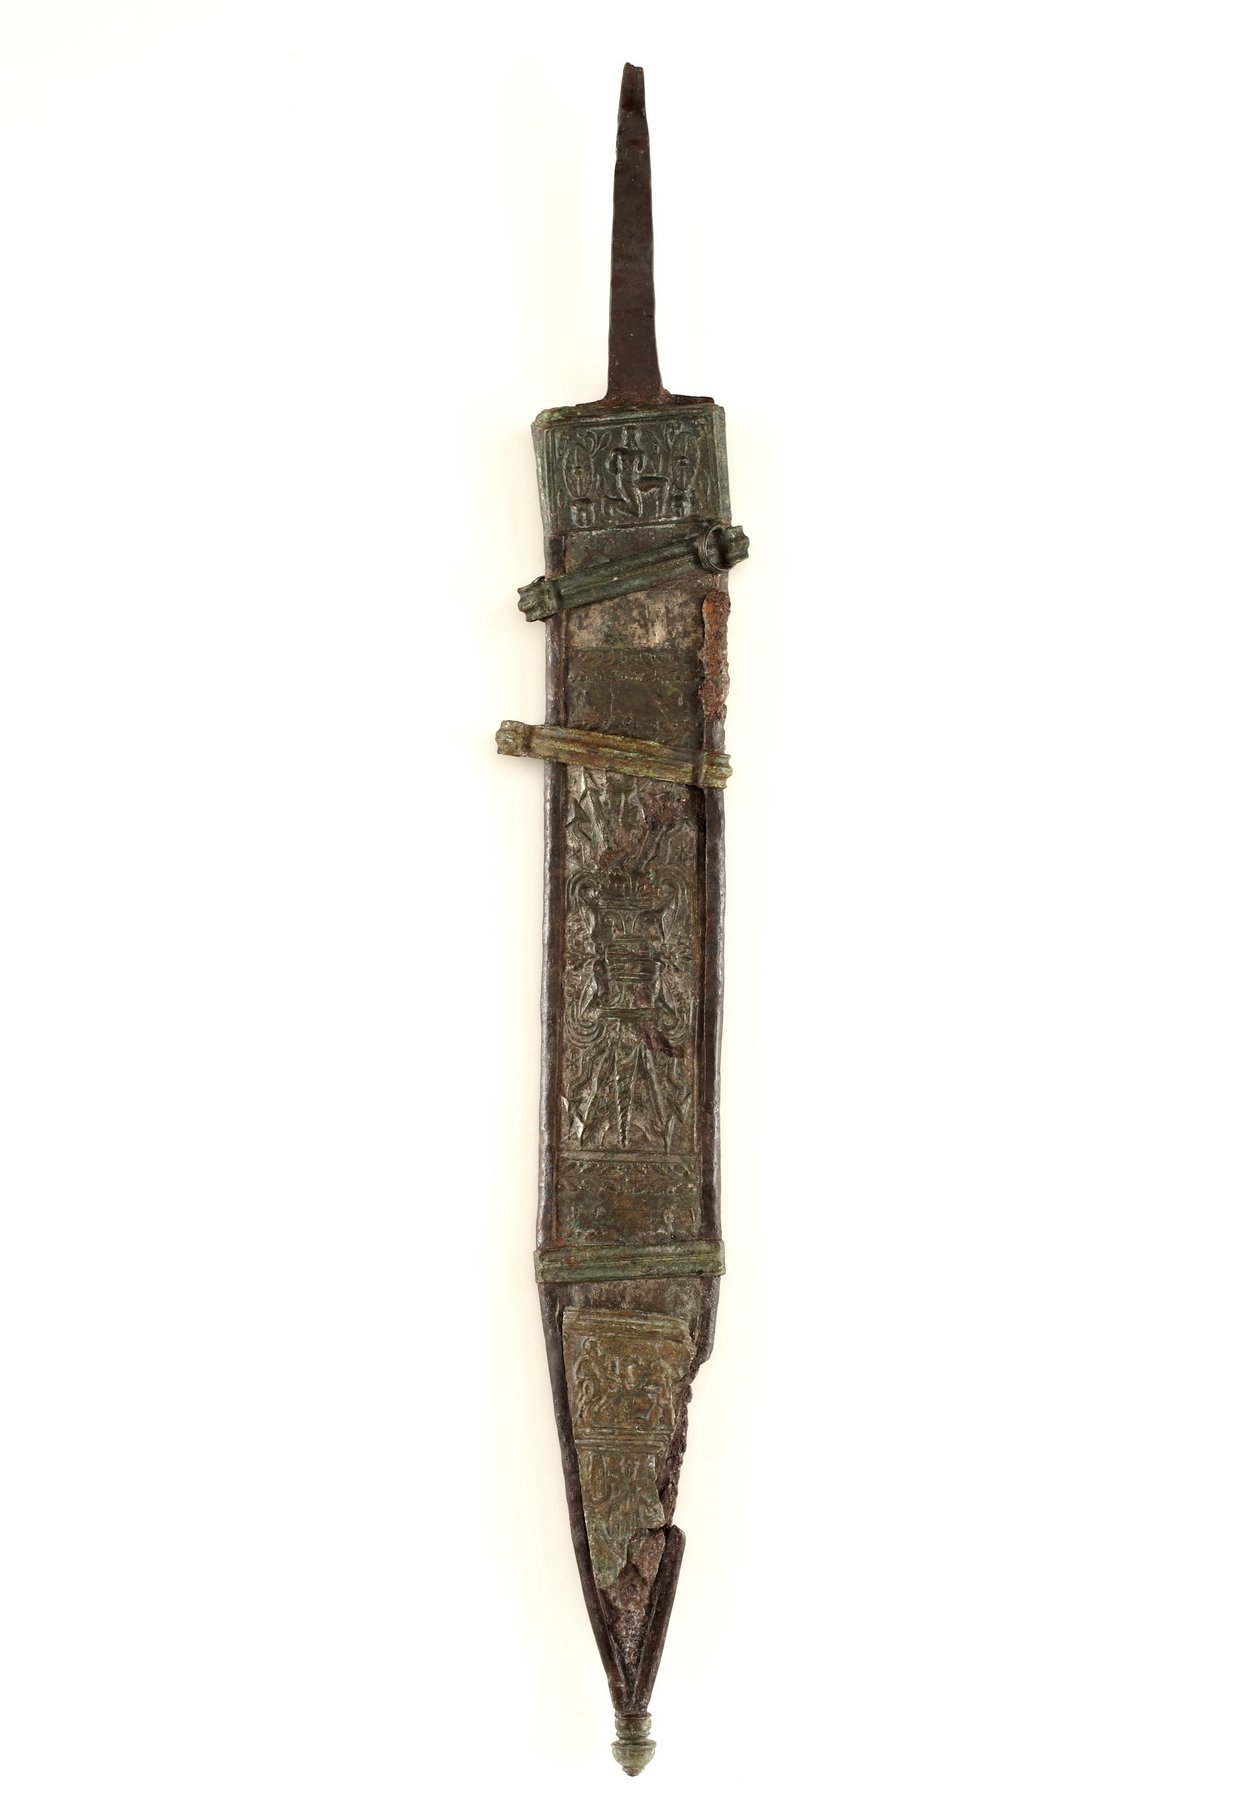 Vor einem weissen Hintergrund ist die Schwertscheide eines Kurzschwertes zu sehen. Diese Schwertscheide ist aus Bronzeblech gefertigt und mit kunstvollen Verzierungen verziert. 